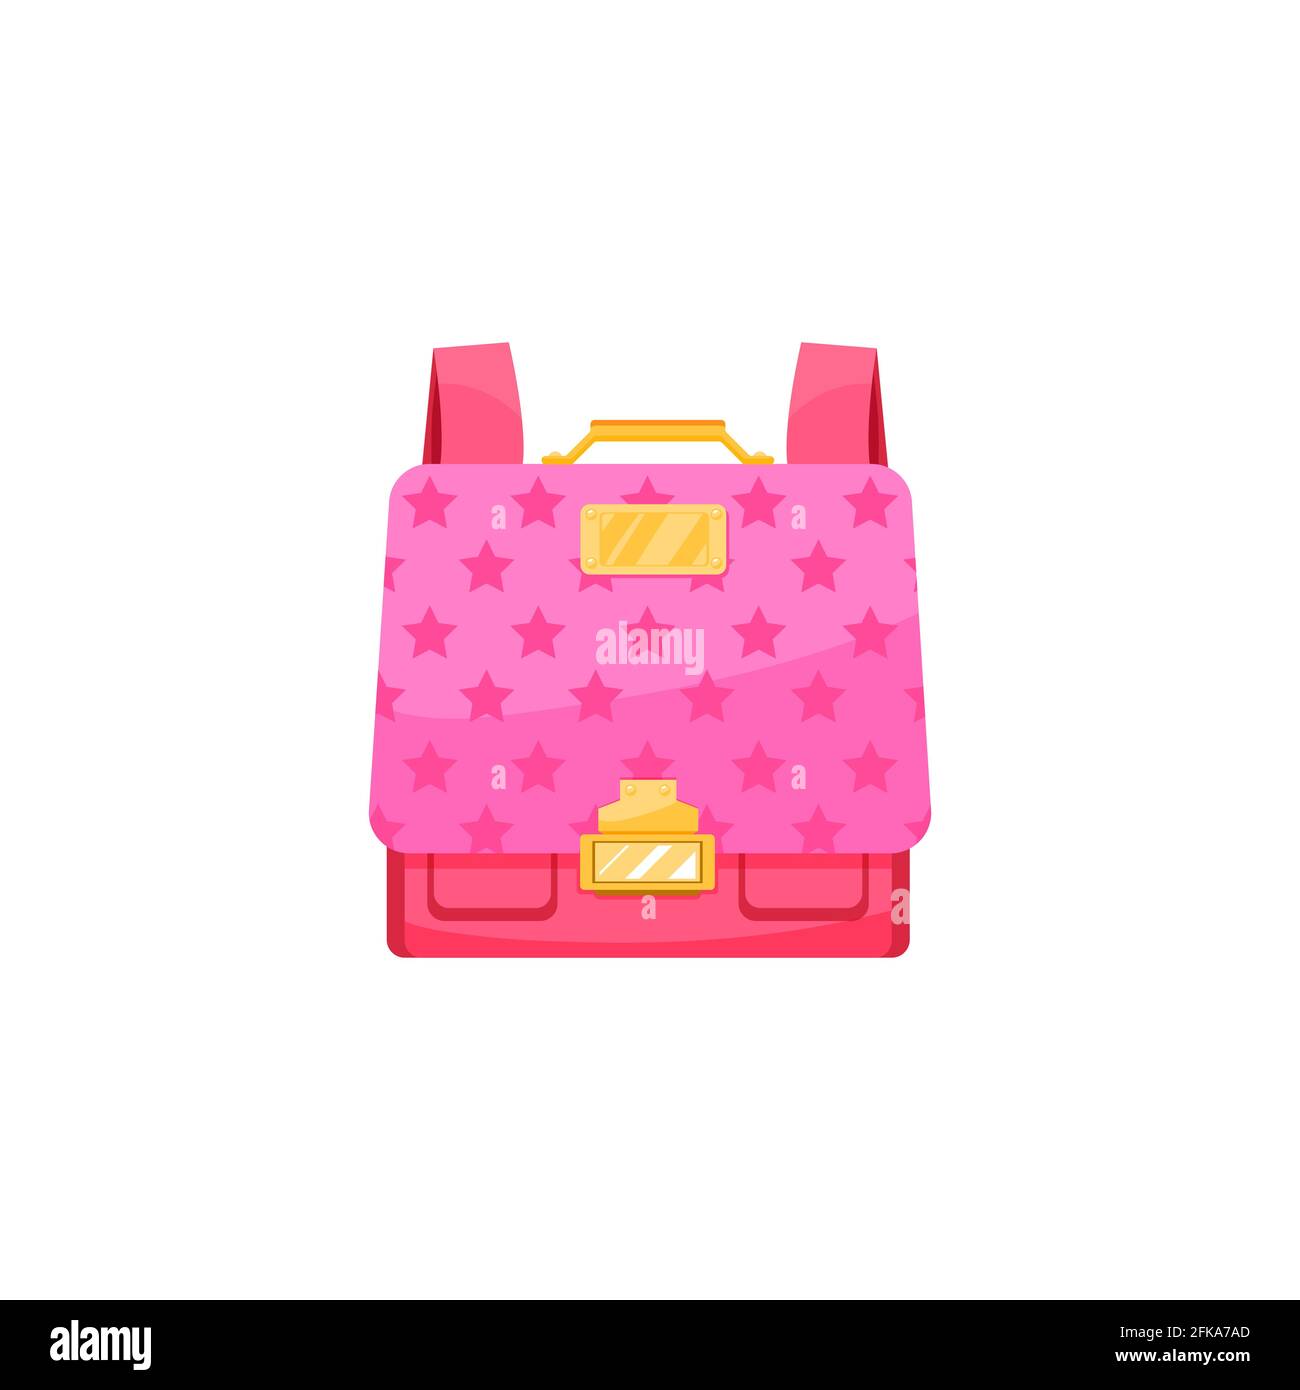 Kinder Schultasche isoliert Vektor-Symbol, niedlich Cartoon rosa haversack für Mädchen Schüler mit Sternen-Muster und Gold-Verschluss Rucksack. Baby Rucksack Rucksack o Stock Vektor